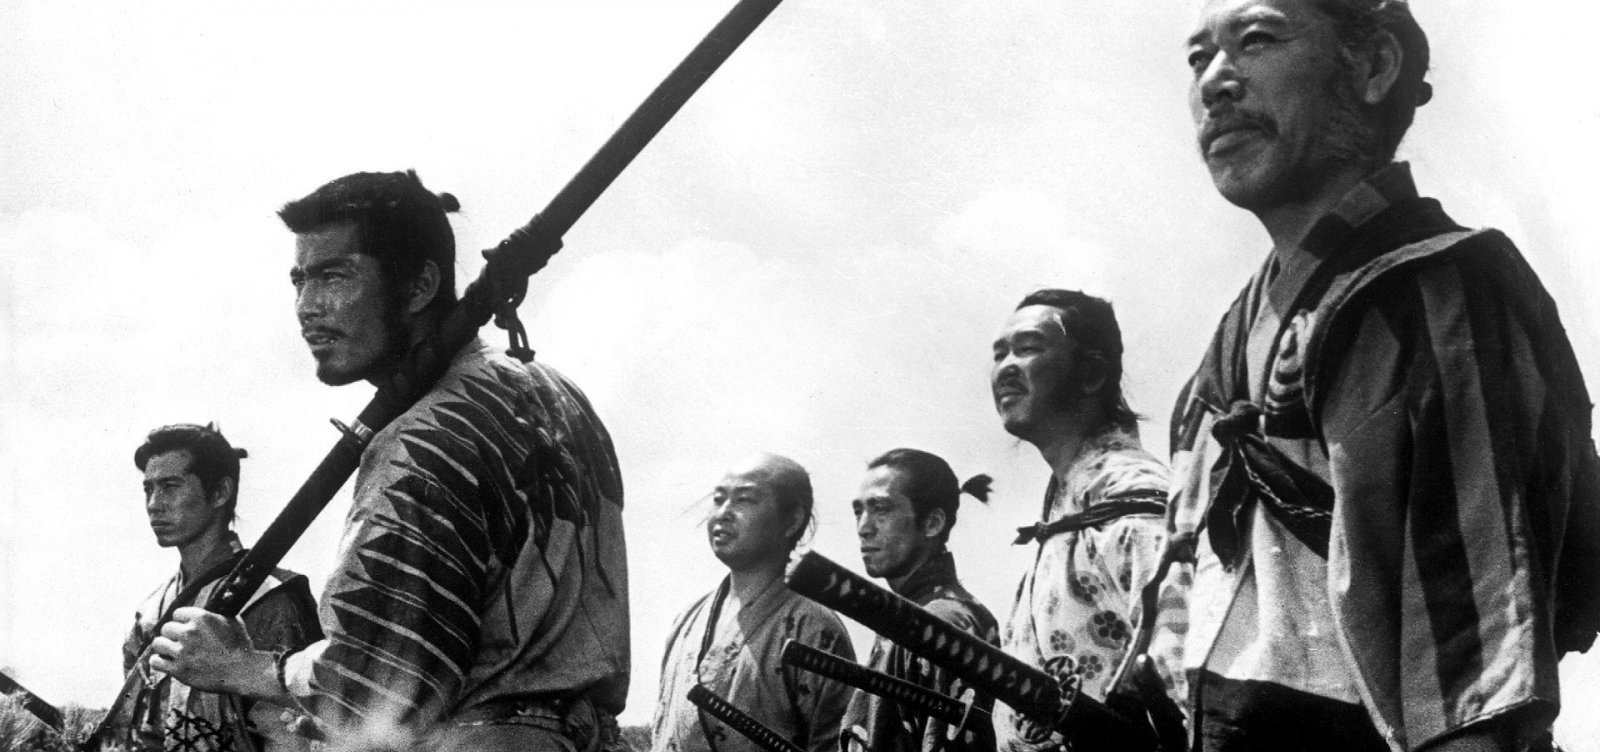 Morre aos 100 anos Shinobu Hashimoto, roteirista de 'Os Sete Samurais'